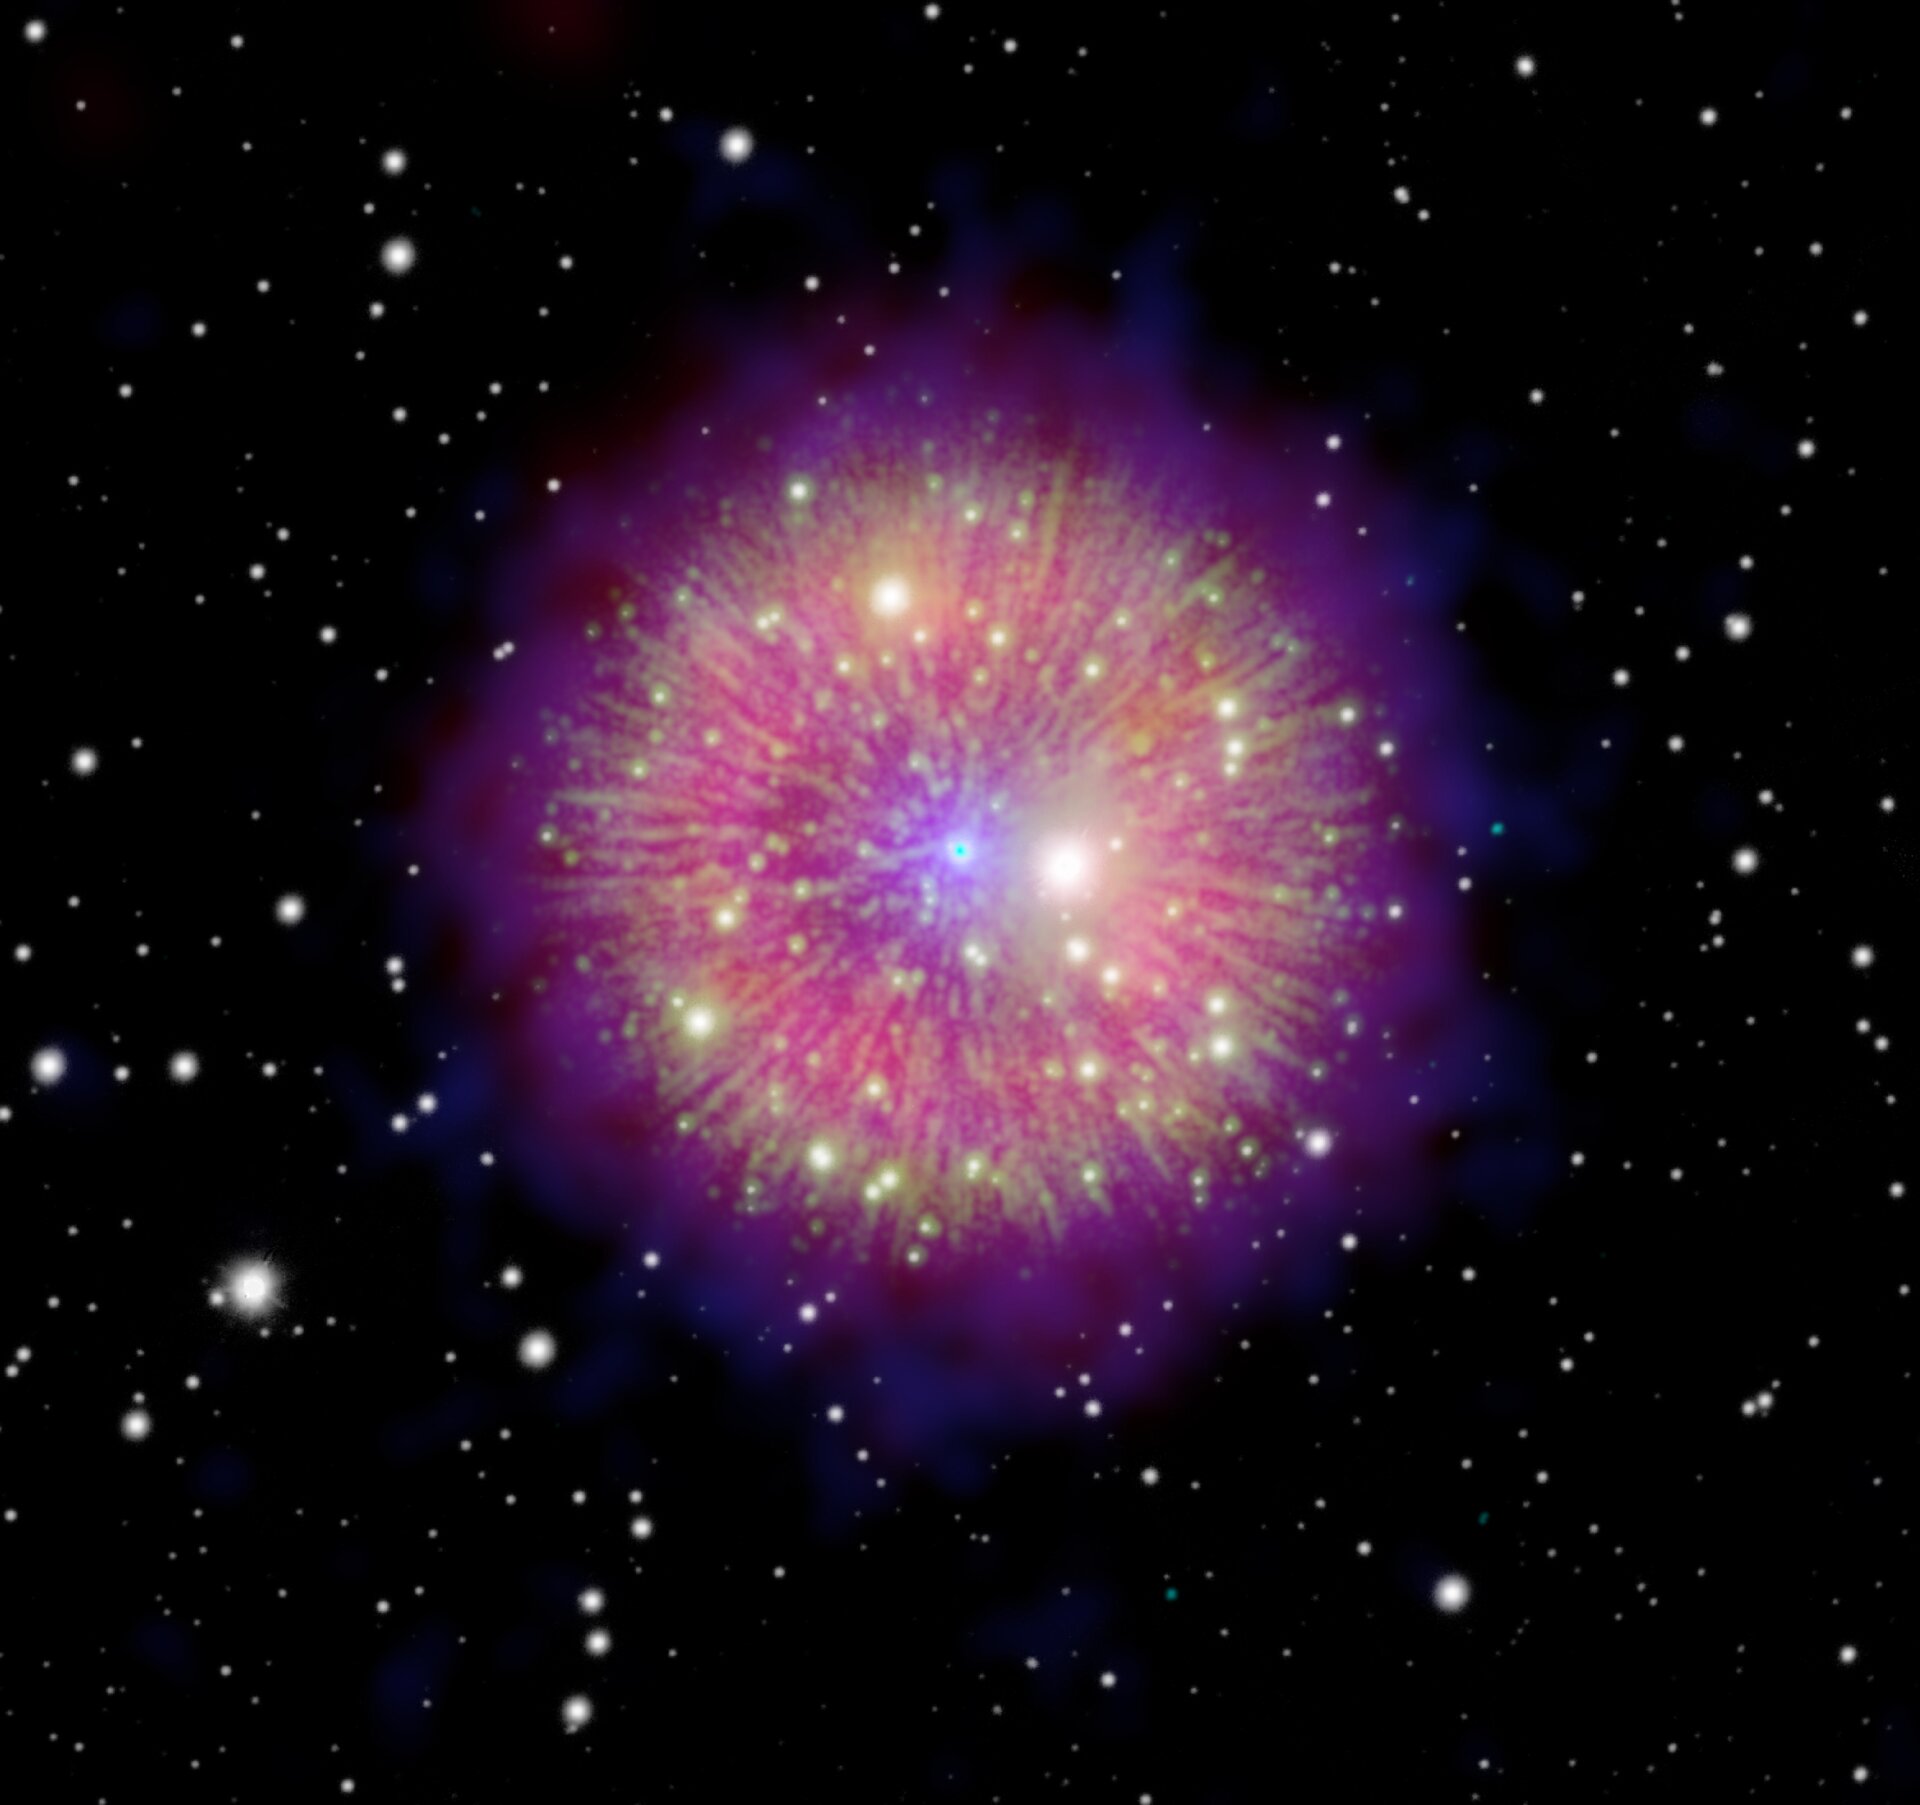 Kompozitna fotografija pokazuje ostatke supernove 1181, u čijem središtu dominira sjajna sferna maglica, okružena poljem bijelih zvijezda nalik na točkice. Iz središnje zvijezde maglice izbijaju zrake poput vatrometa, stvarajući efekt svemirskog pirotehničkog showa. Zasluge za fotografiju idu G. Ferrandu i J. Englishu s Sveučilišta u Manitobi, uz suradnju NASA-inih projekata Chandra i WISE, ESA-inog XMM-a, MDM/R.Fessena s Dartmouth Collegea, te Pan-STARRS-a.